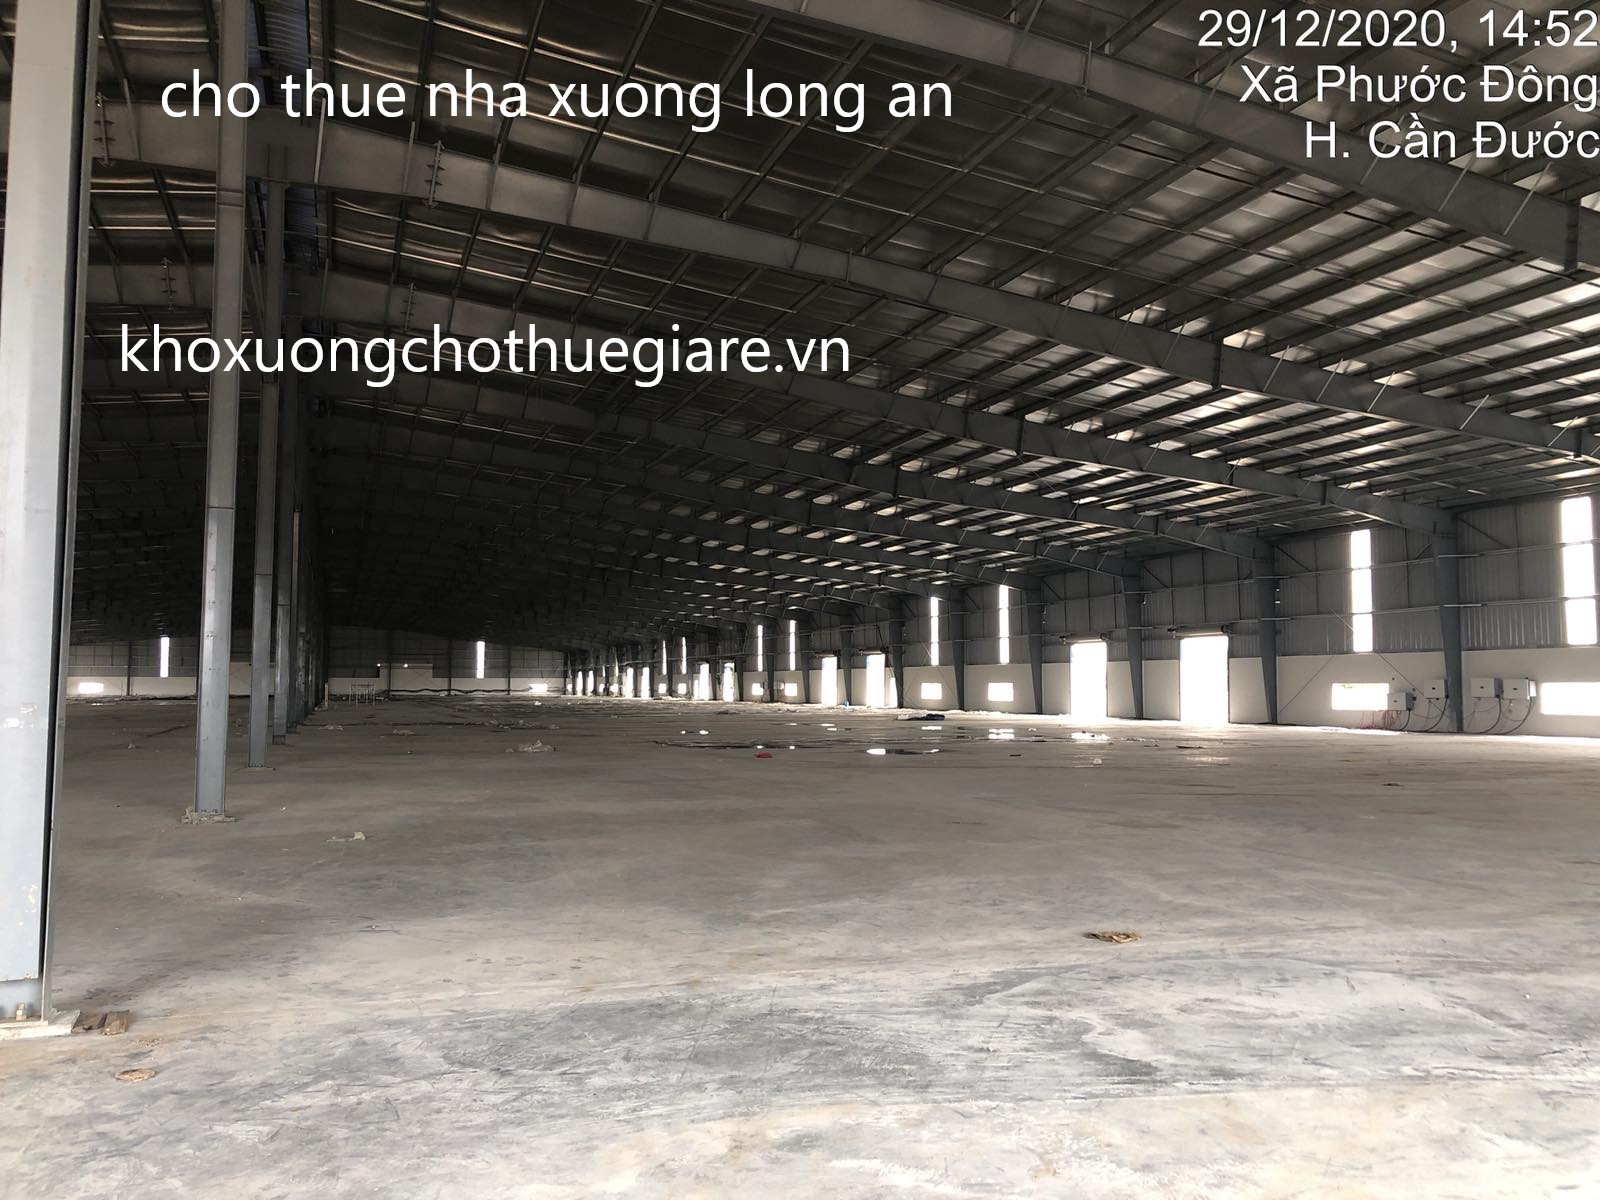 Cho thue nha xuong long an-kcn cau cang Phuoc Dong